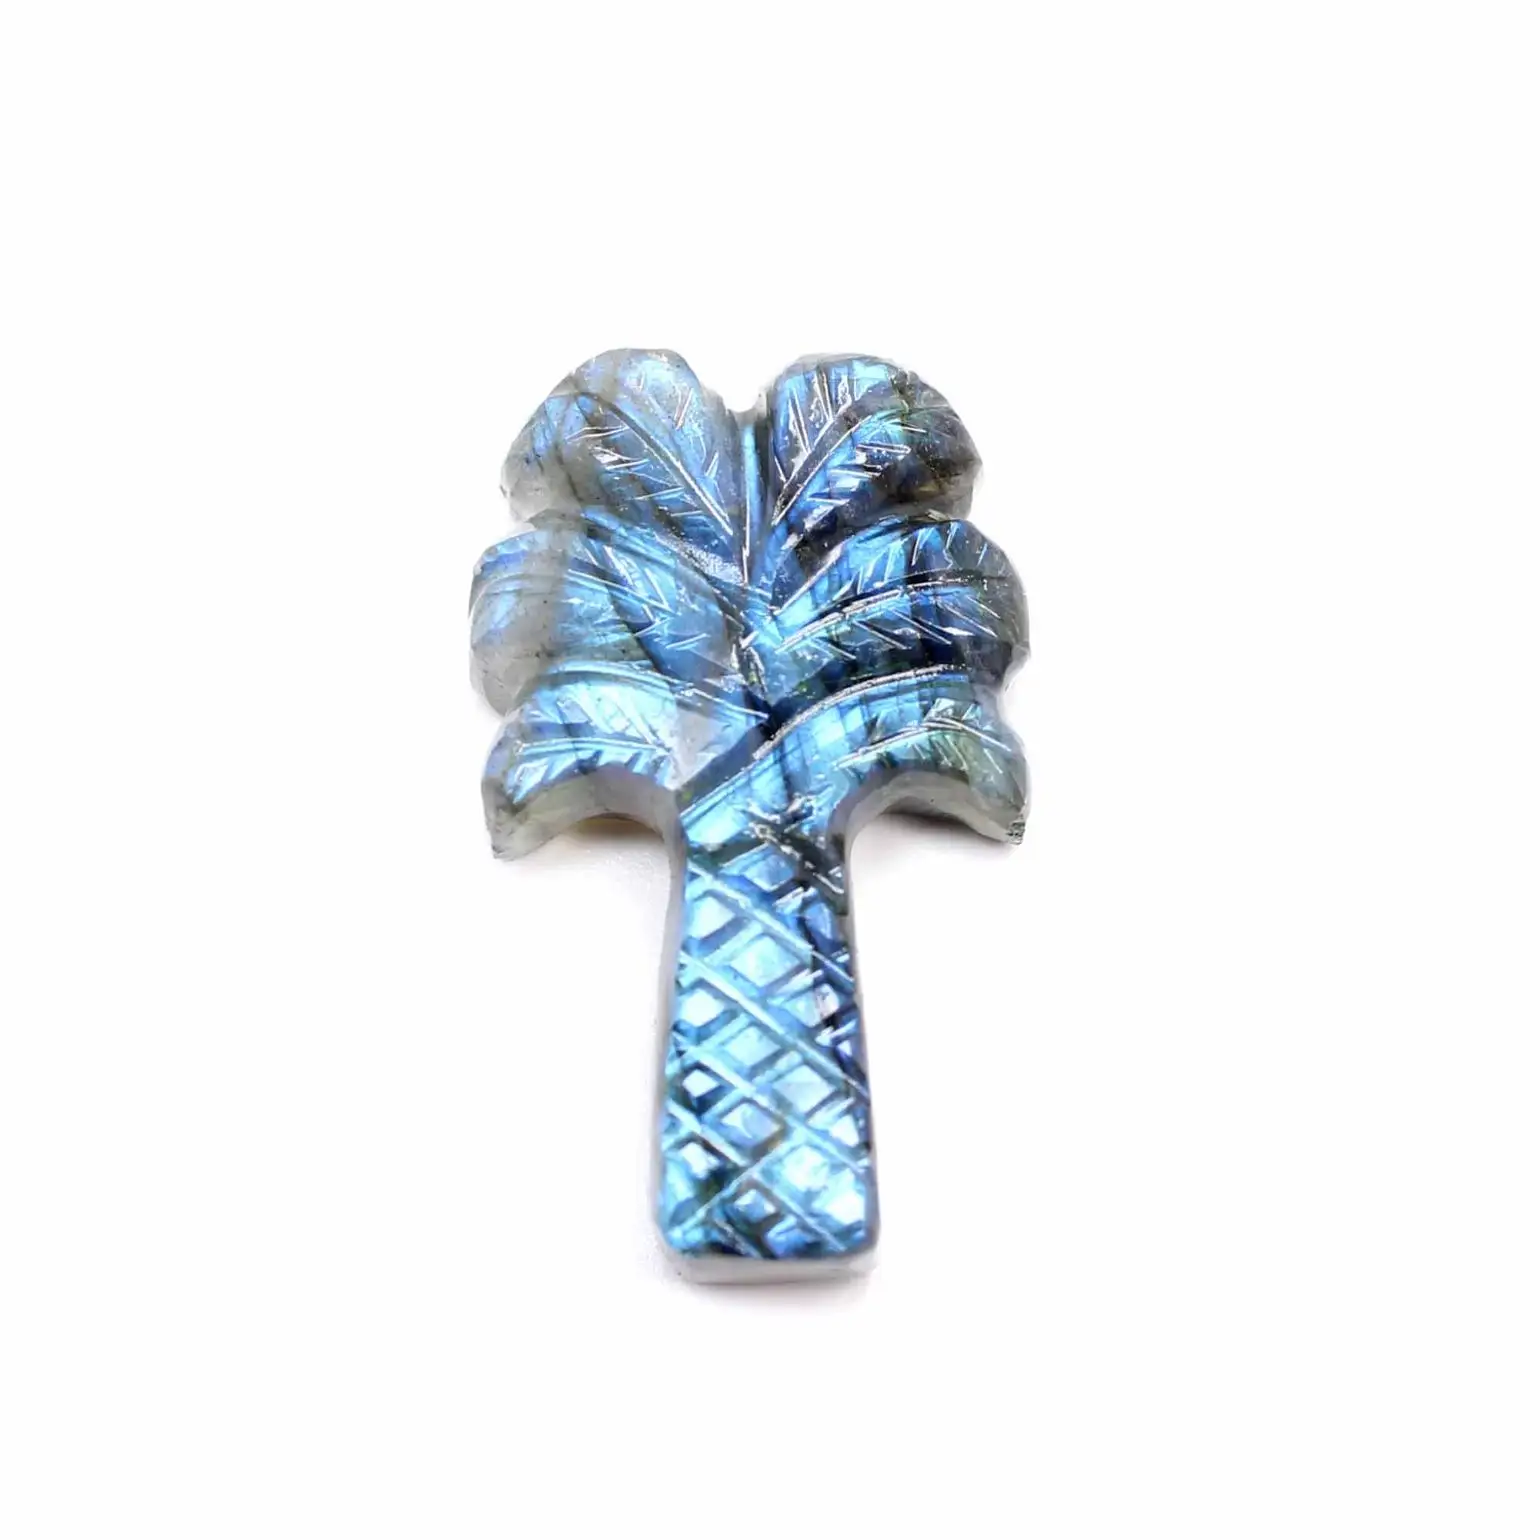 Натуральный синий яркий Лабрадорит в форме дерева резьба Размер 31x21 мм драгоценный камень